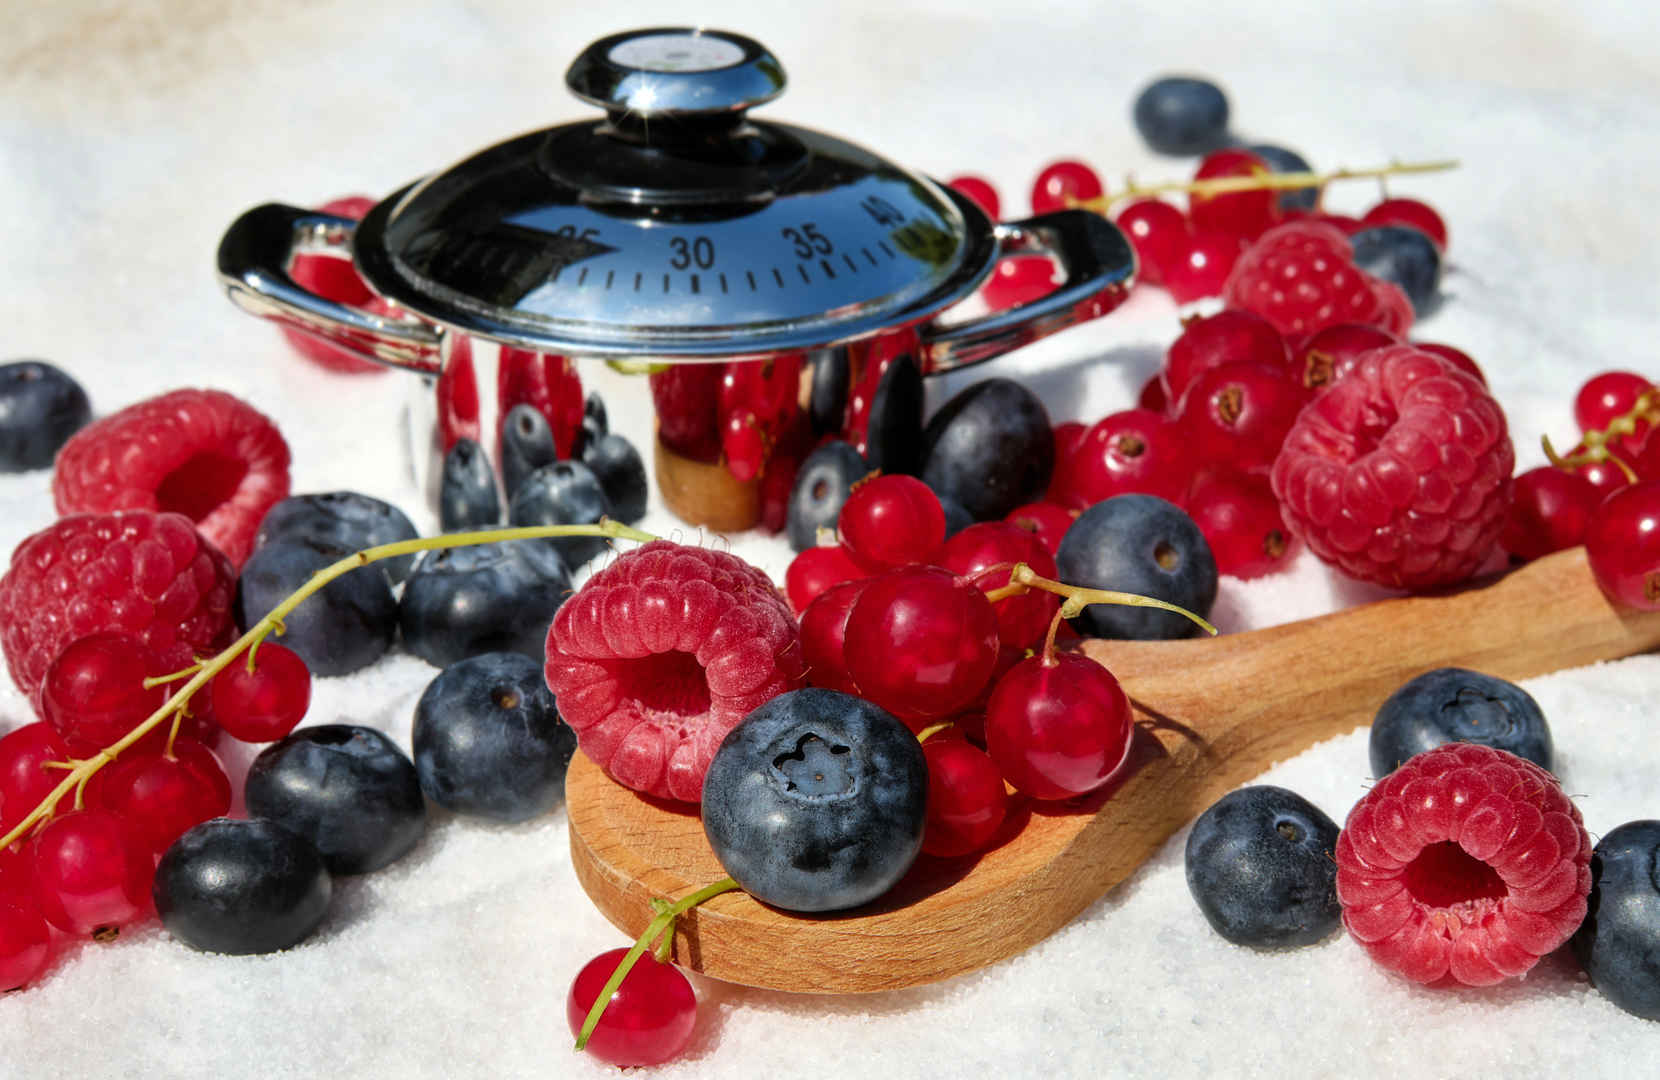 浆果 混合 山莓 蓝莓 葡萄干 水果 甜 健康 维生素 食品 弗里施 糖 锅 4K图片-